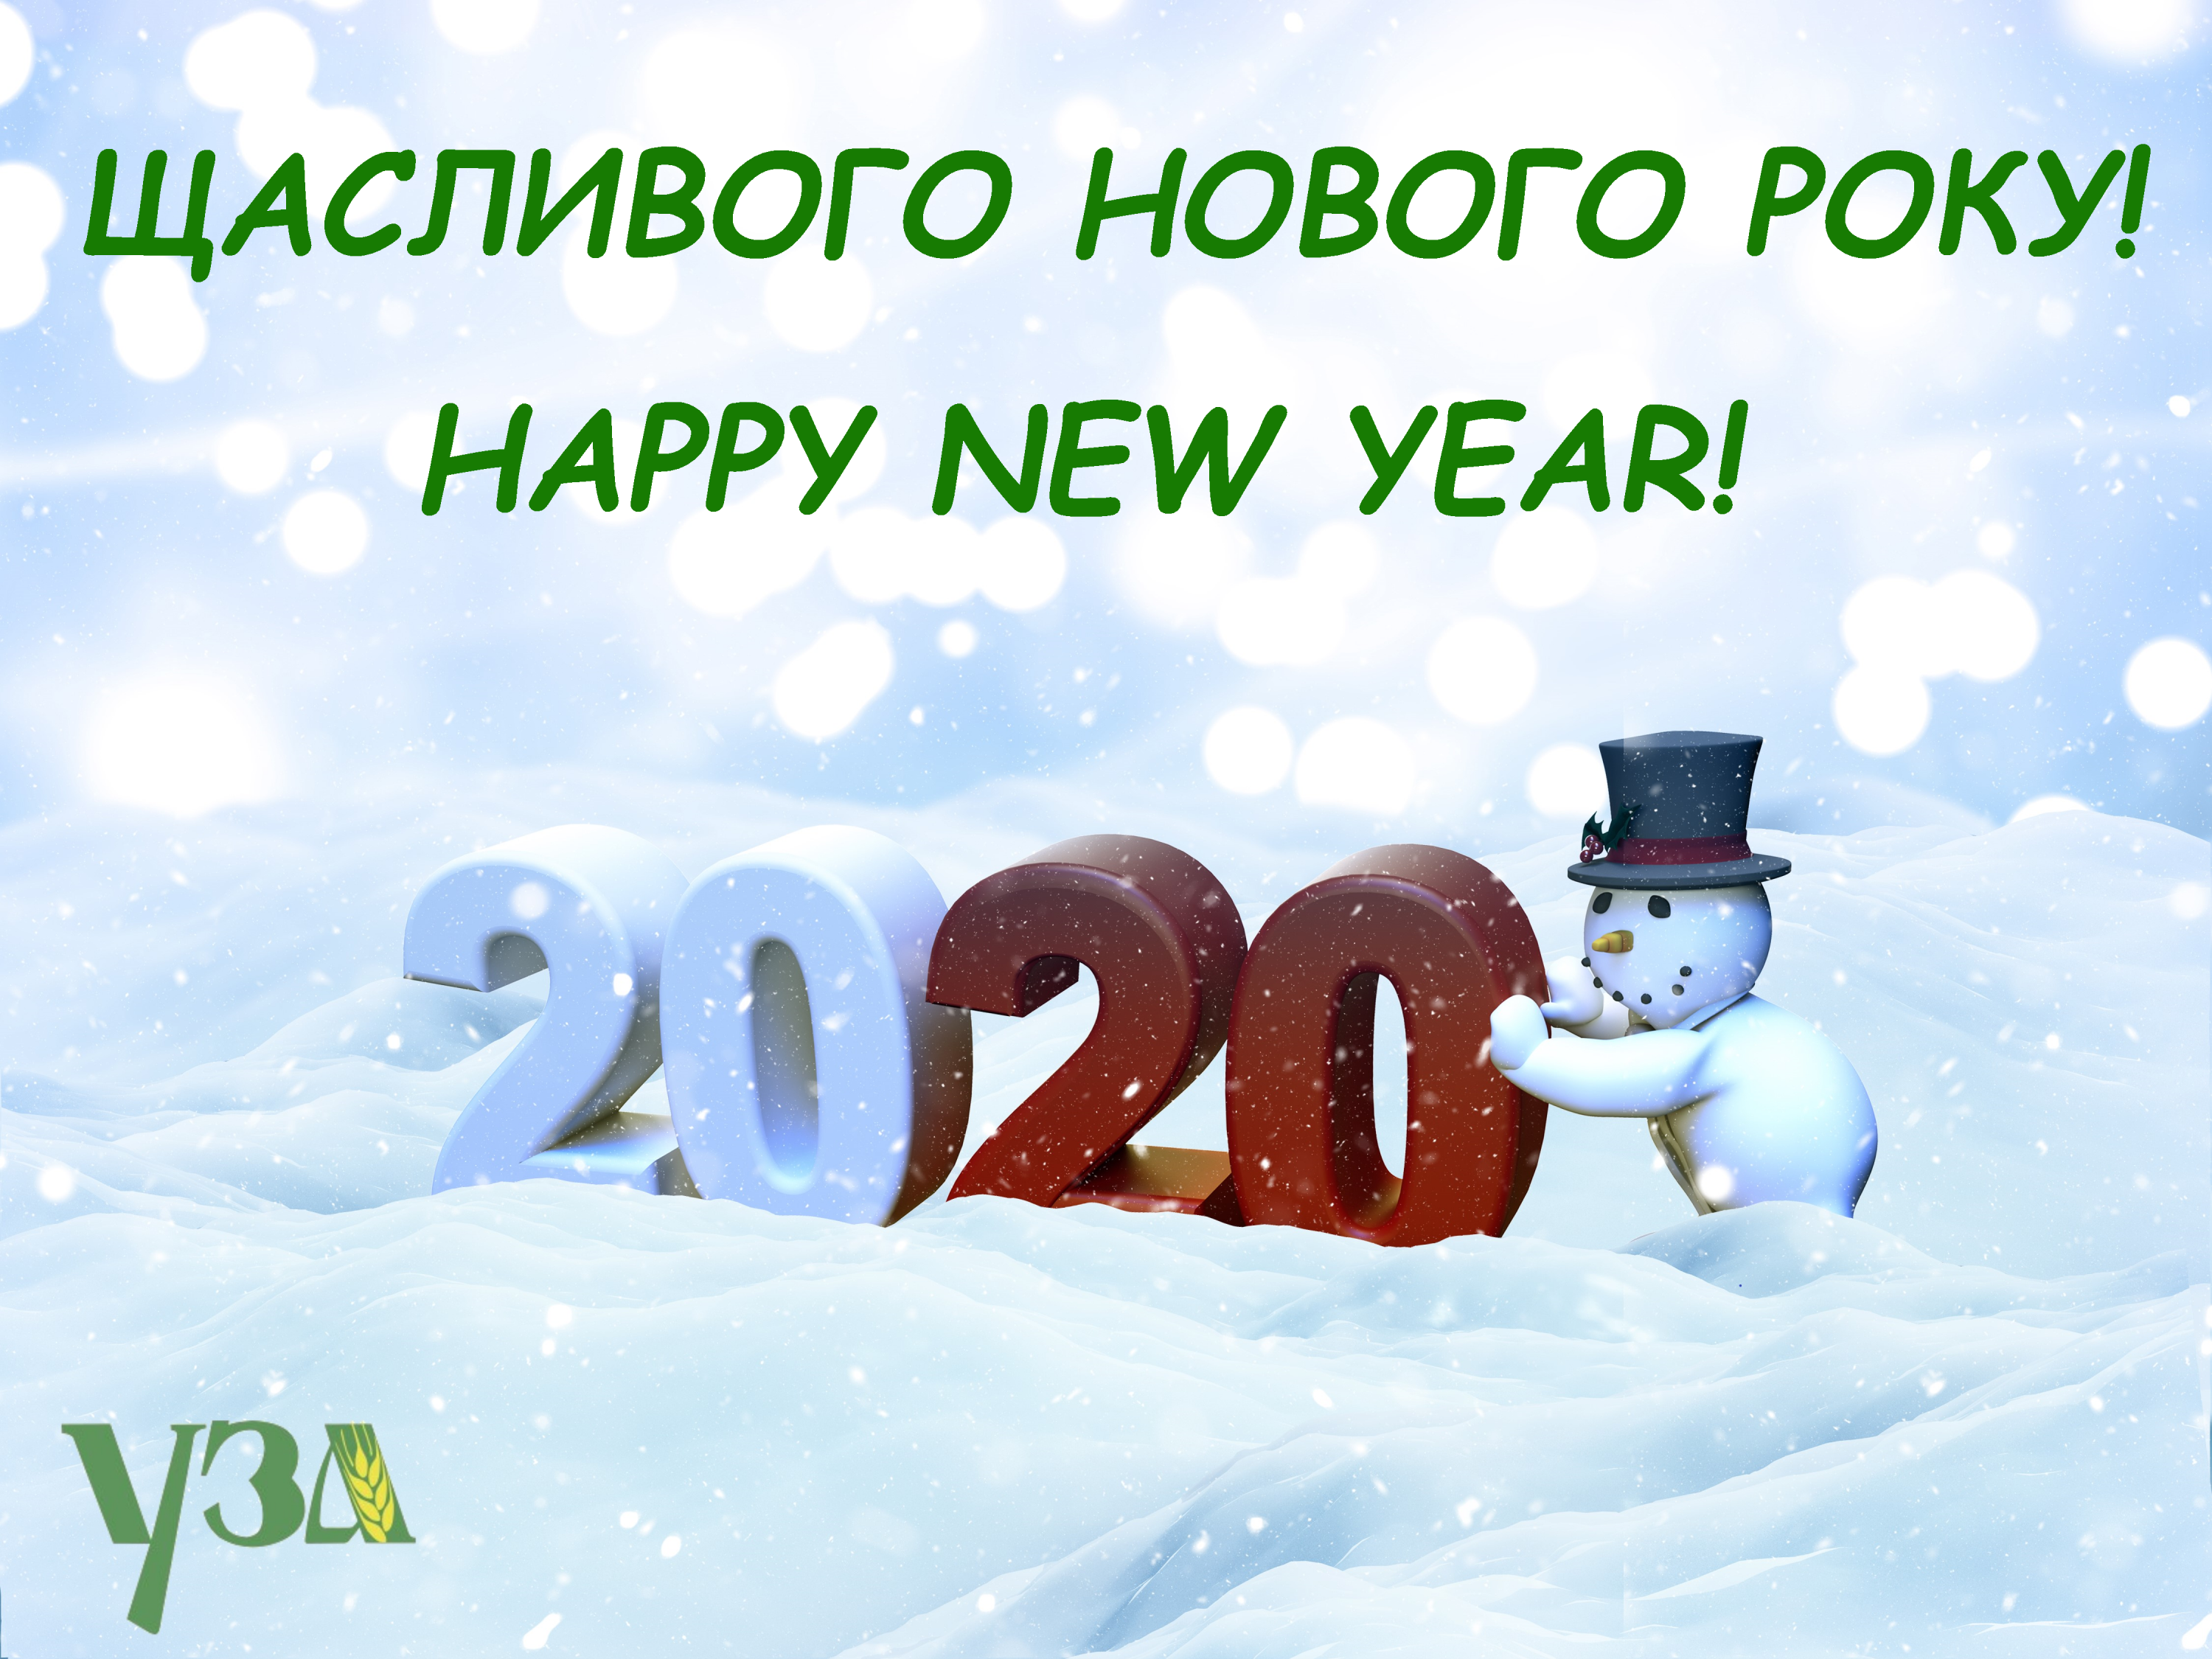 Веселих свят і щасливих подій у 2020 році!